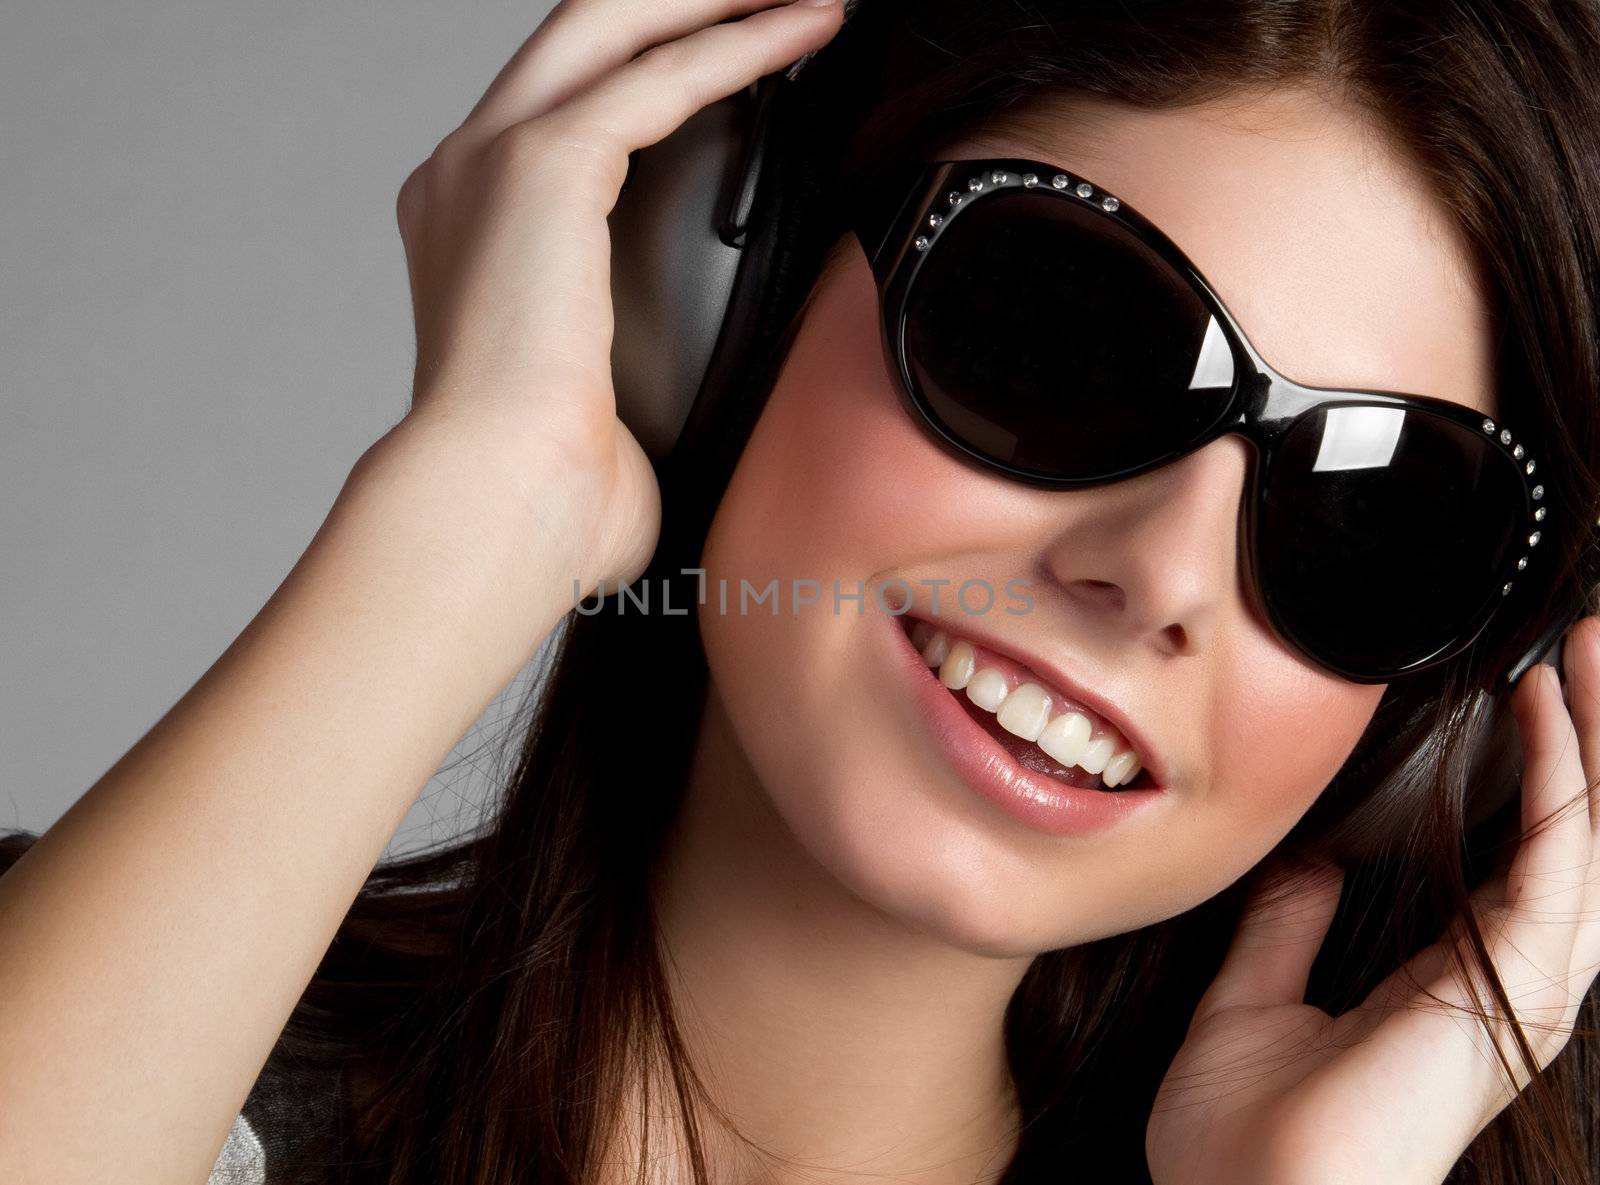 Headphones Girl by keeweeboy